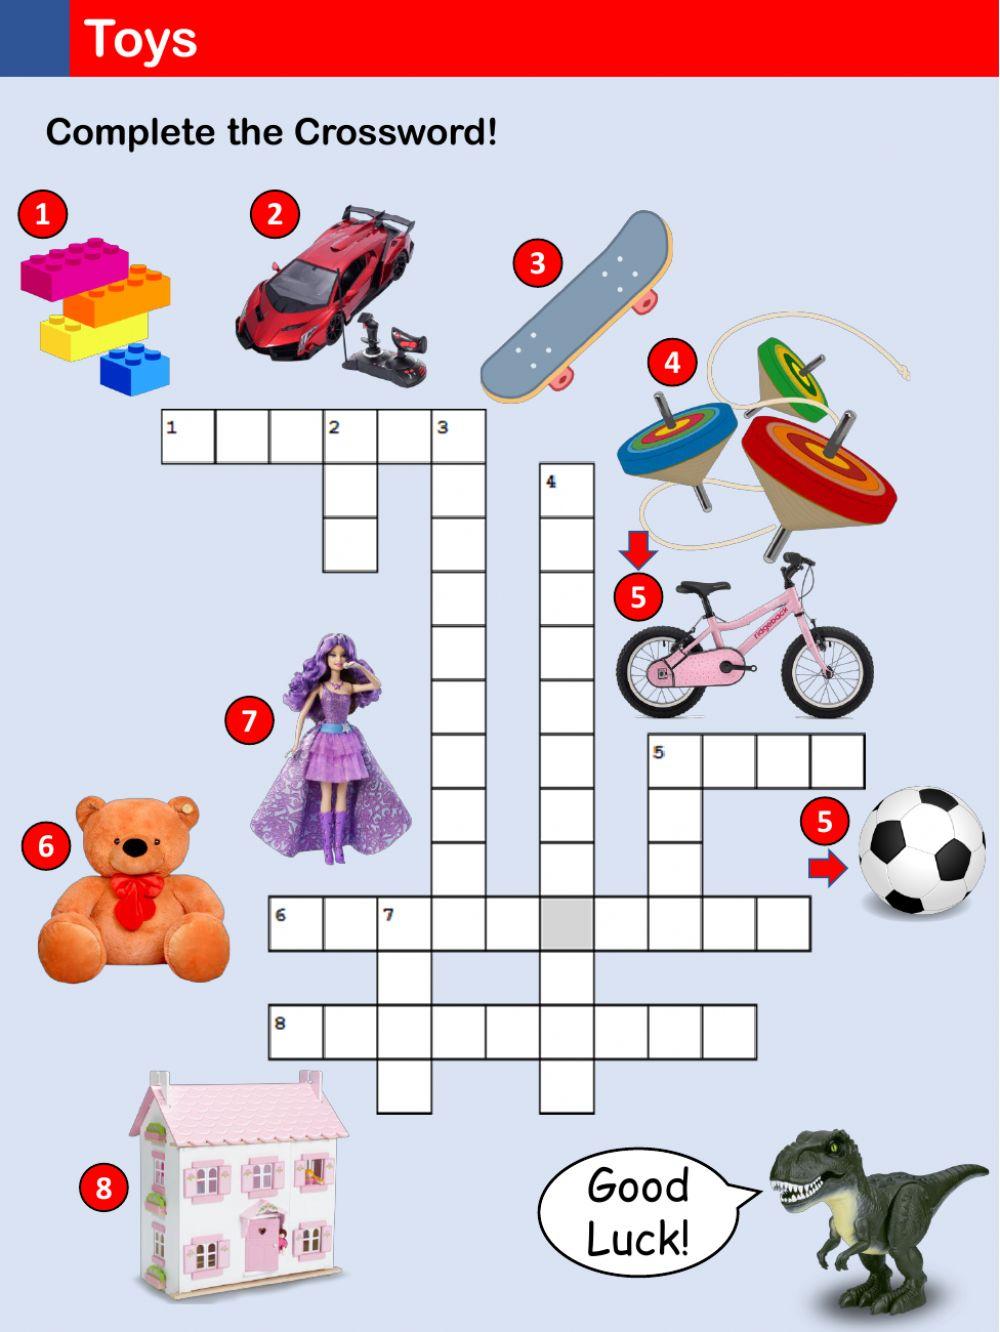 Toys - Crossword